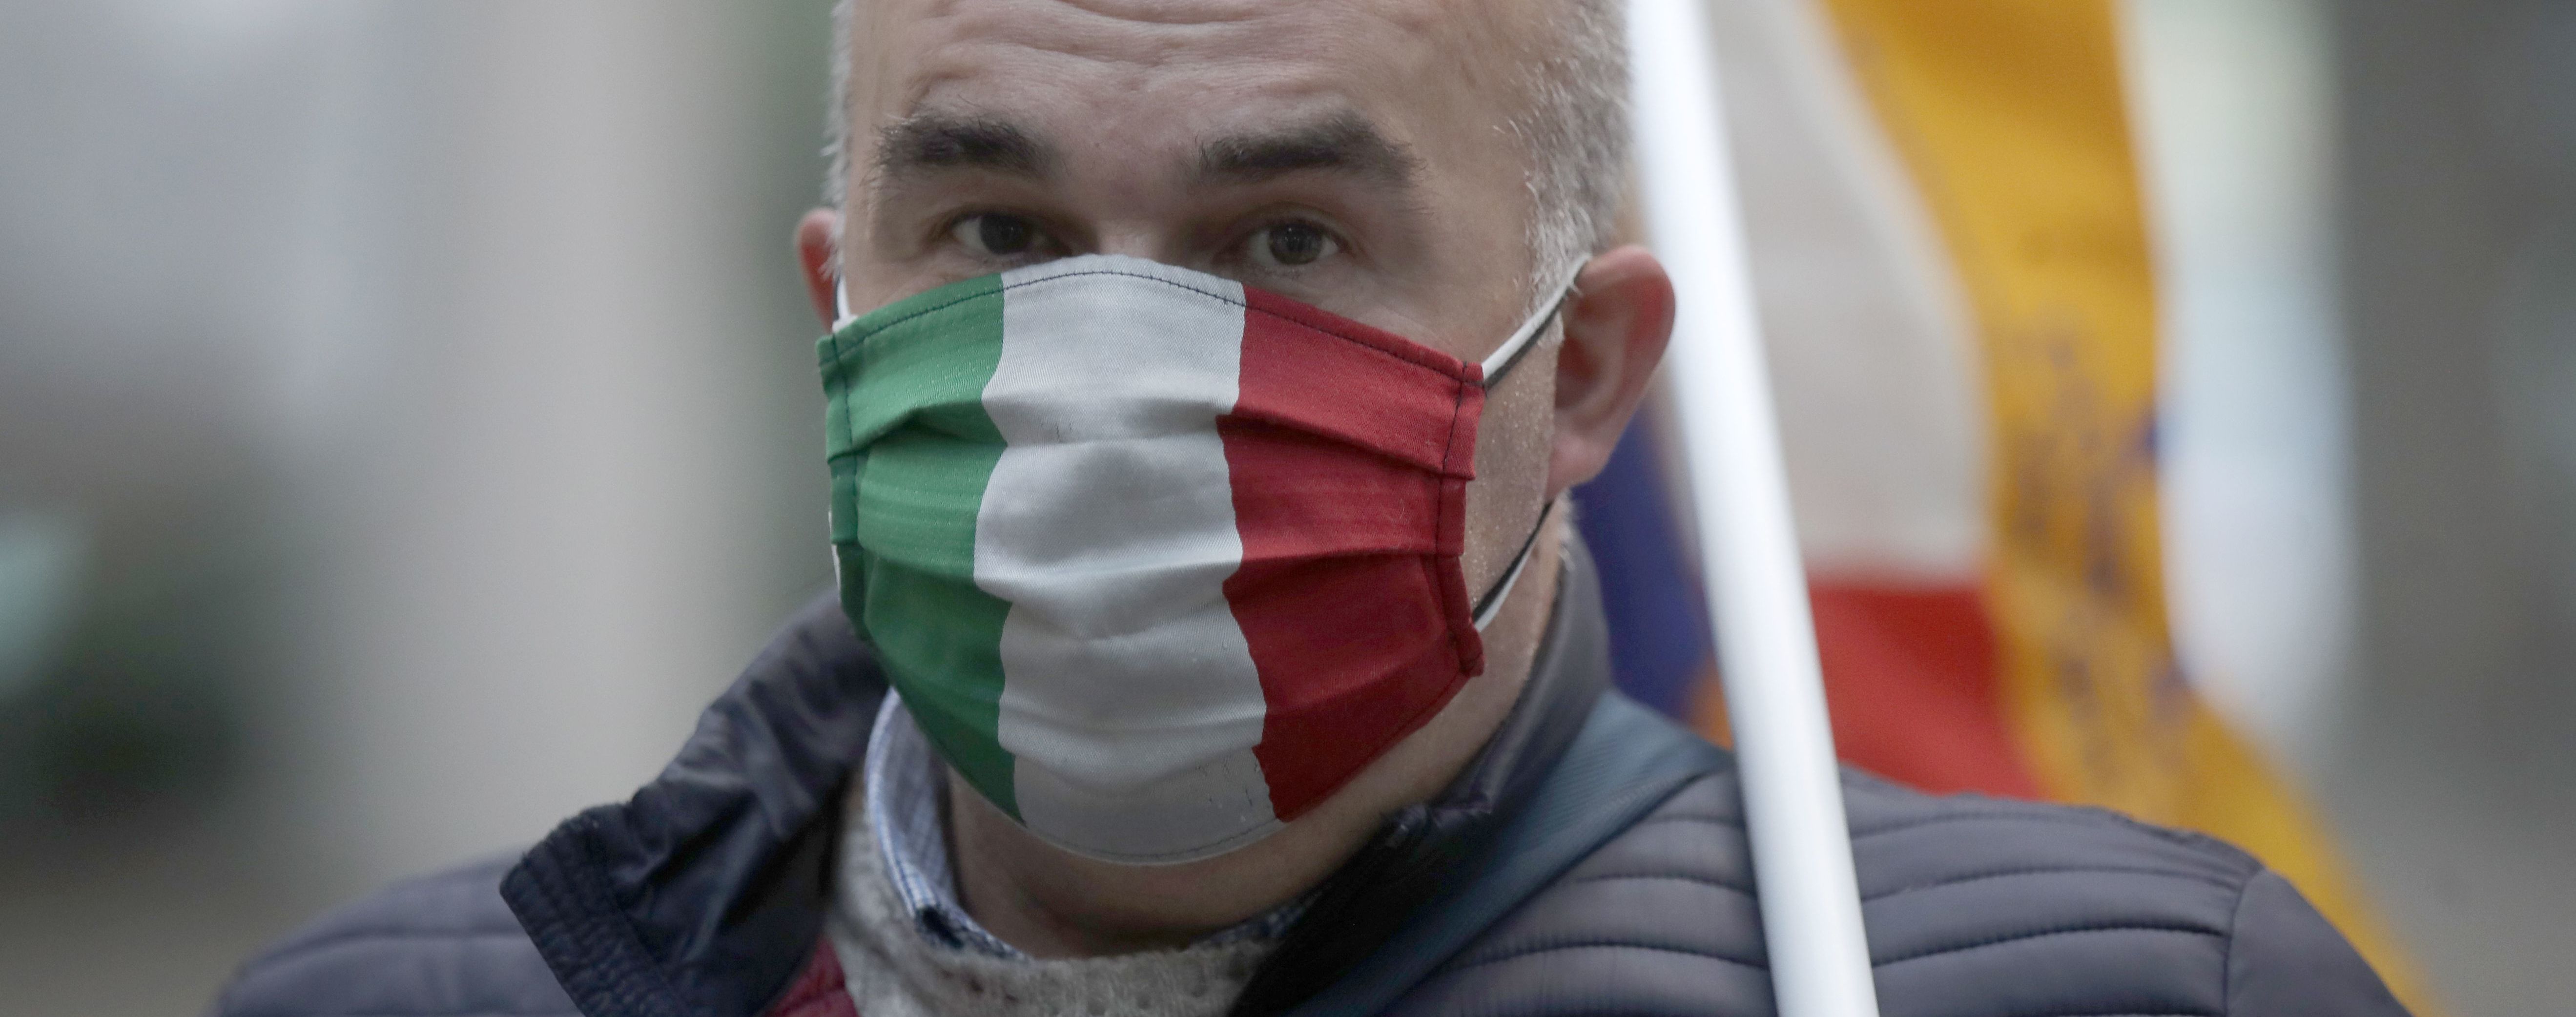 Протести проти COVID-паспортів: в Італії жорстоко розігнали мітингарів